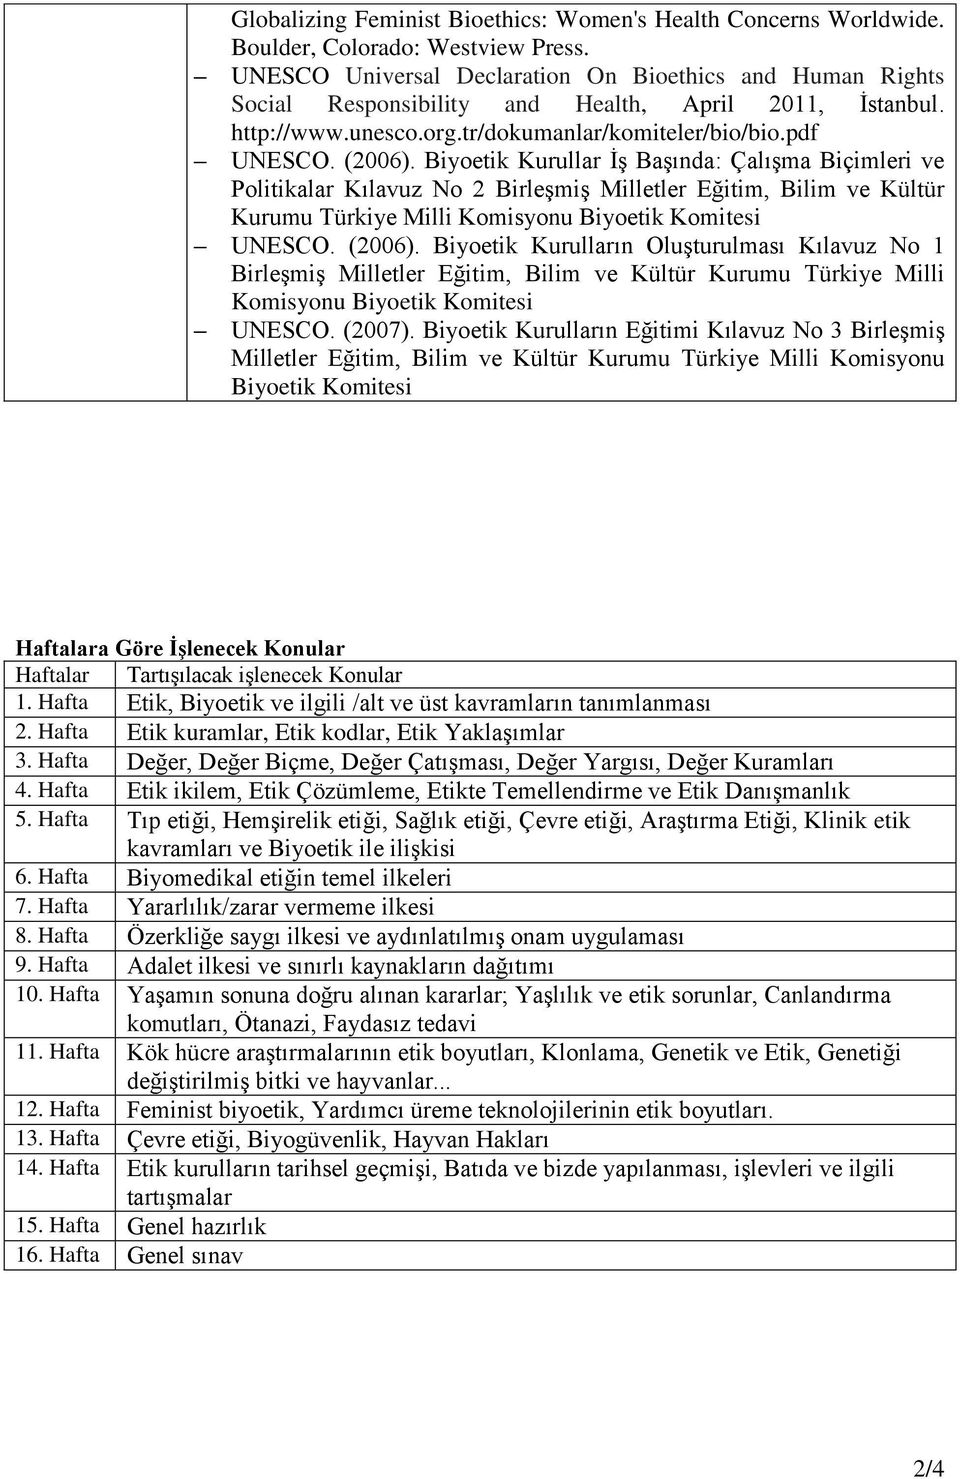 Biyoetik Kurullar İş Başında: Çalışma Biçimleri ve Politikalar Kılavuz No 2 Birleşmiş Milletler Eğitim, Bilim ve Kültür Kurumu Türkiye Milli Komisyonu Biyoetik Komitesi UNESCO. (2006).